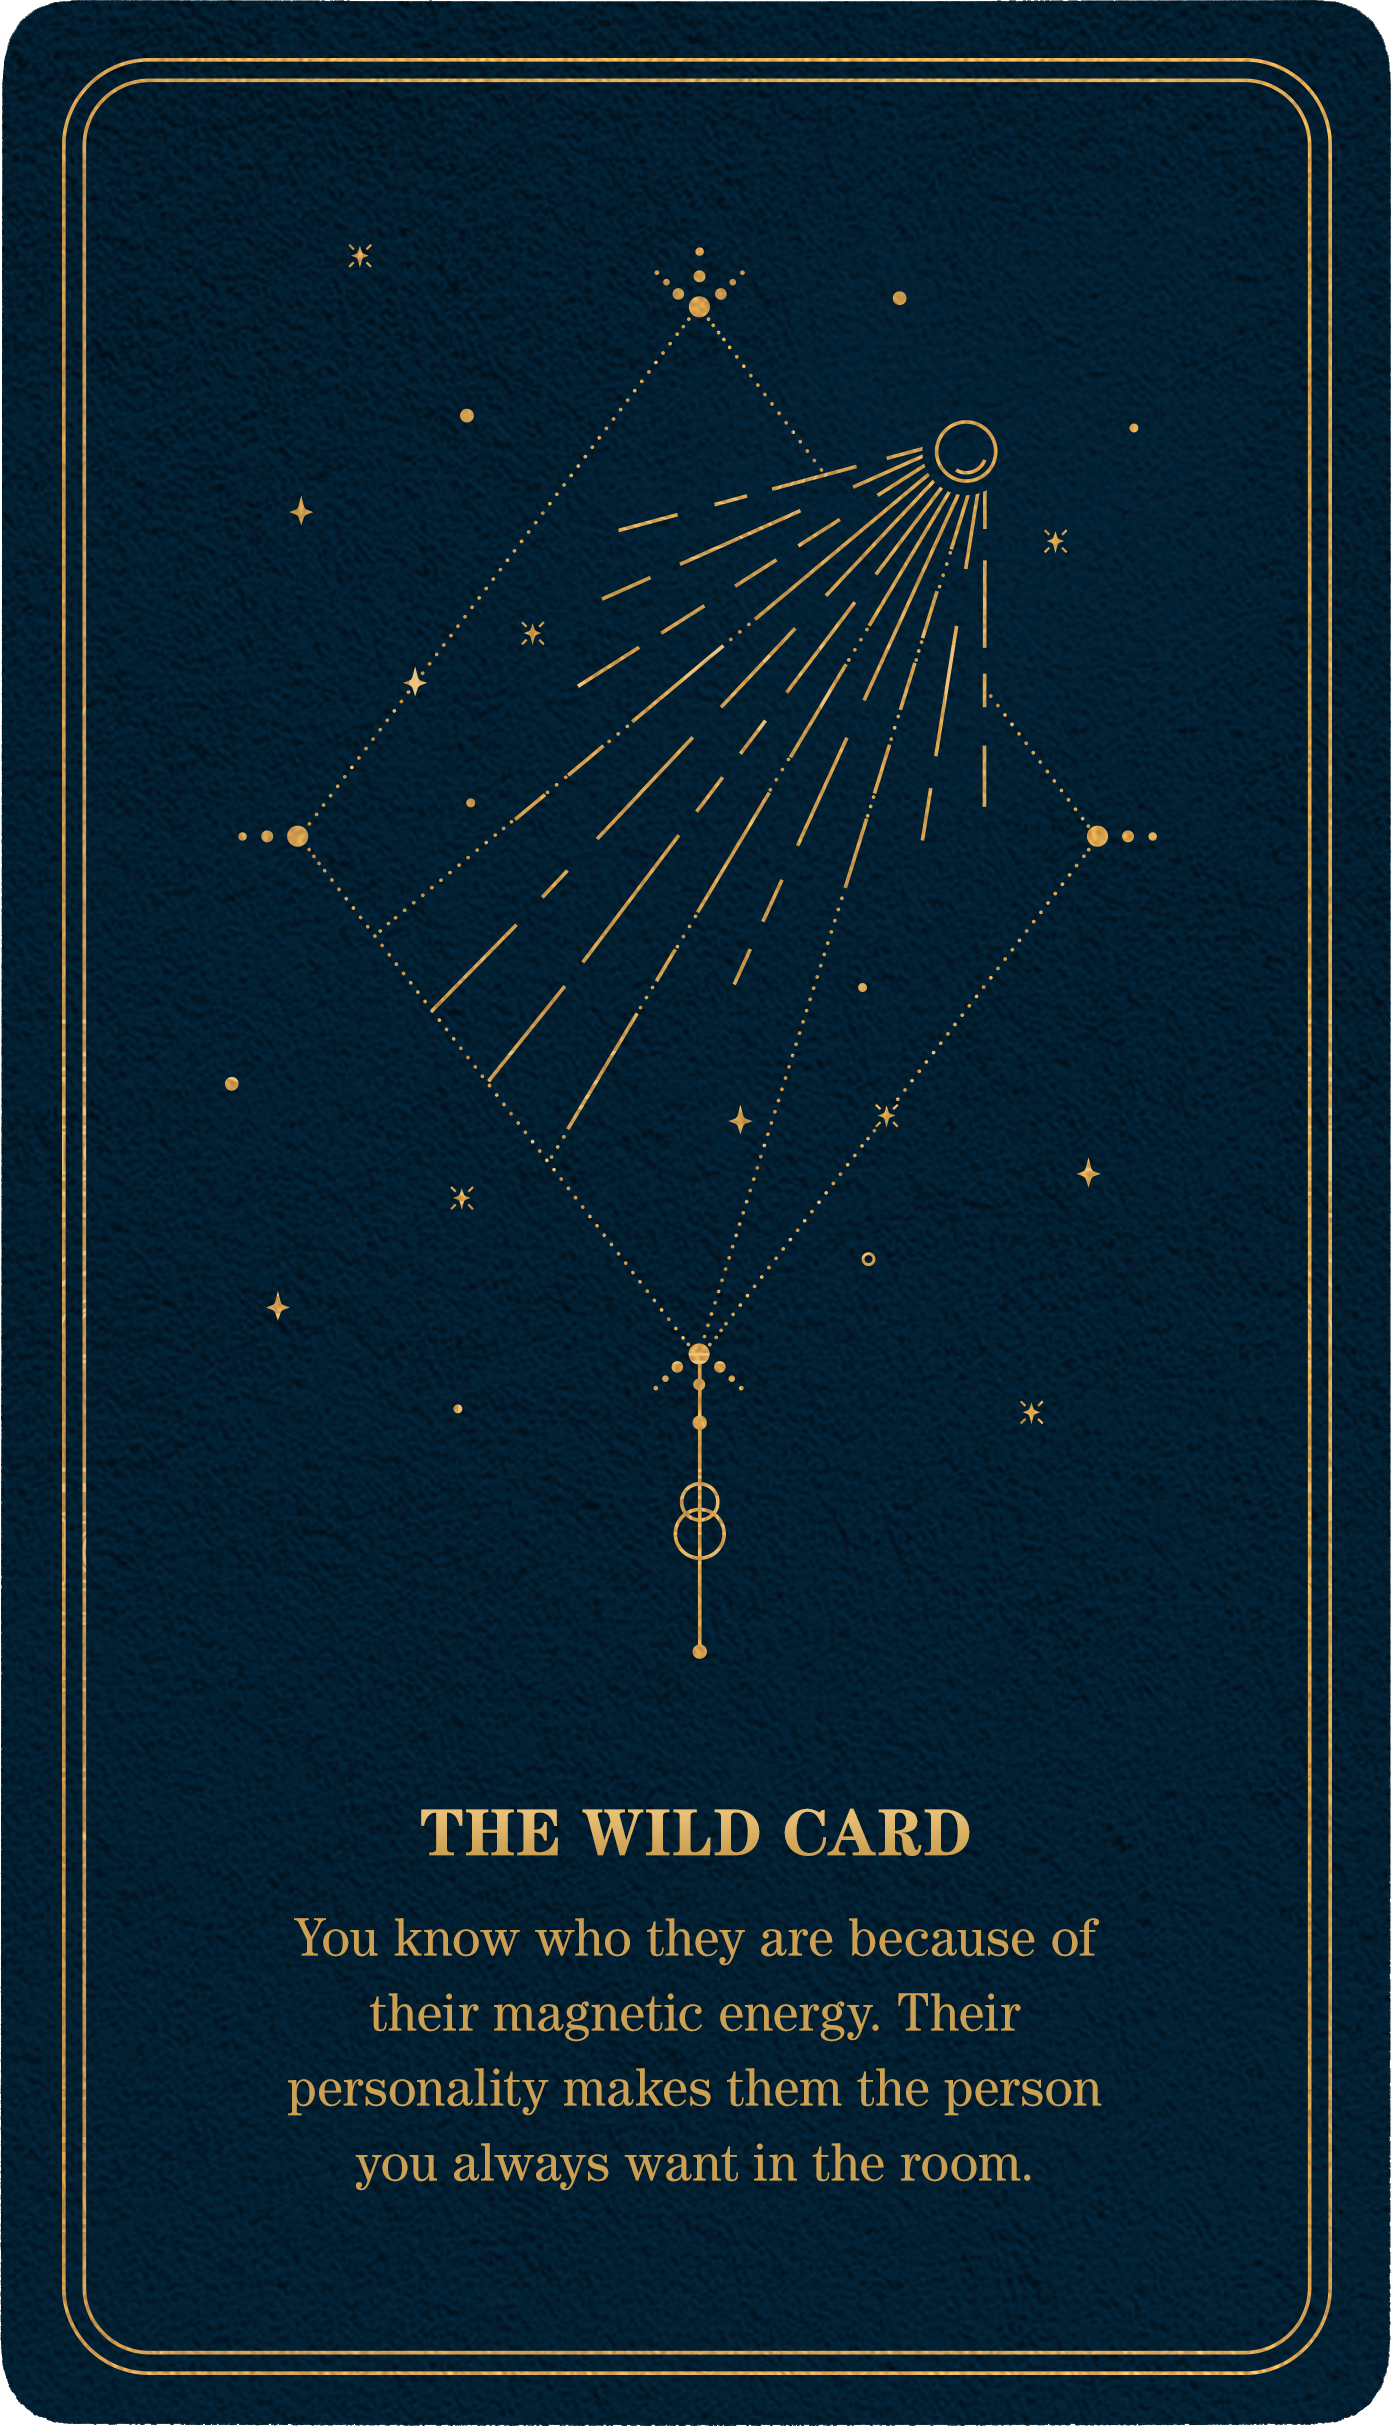 tarot-card-wildcard-1-2.png